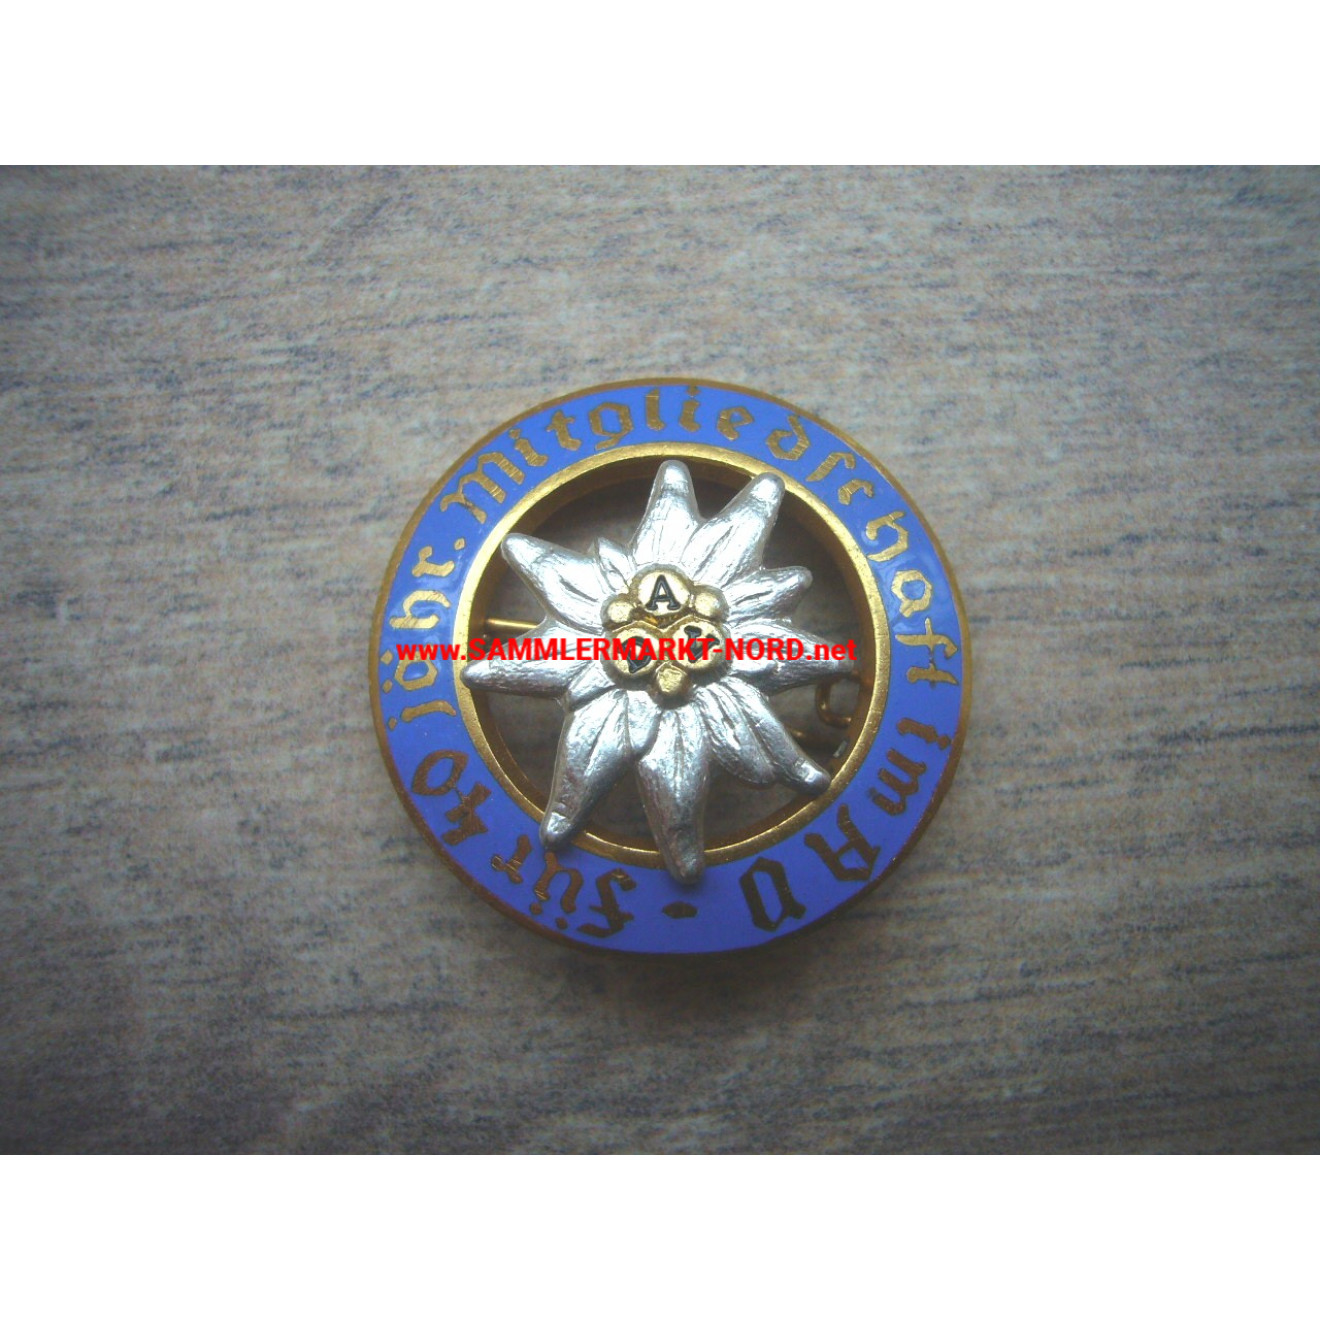 DAV German Alpine Club - Badge of honor for 40 years membership - 30 mm version